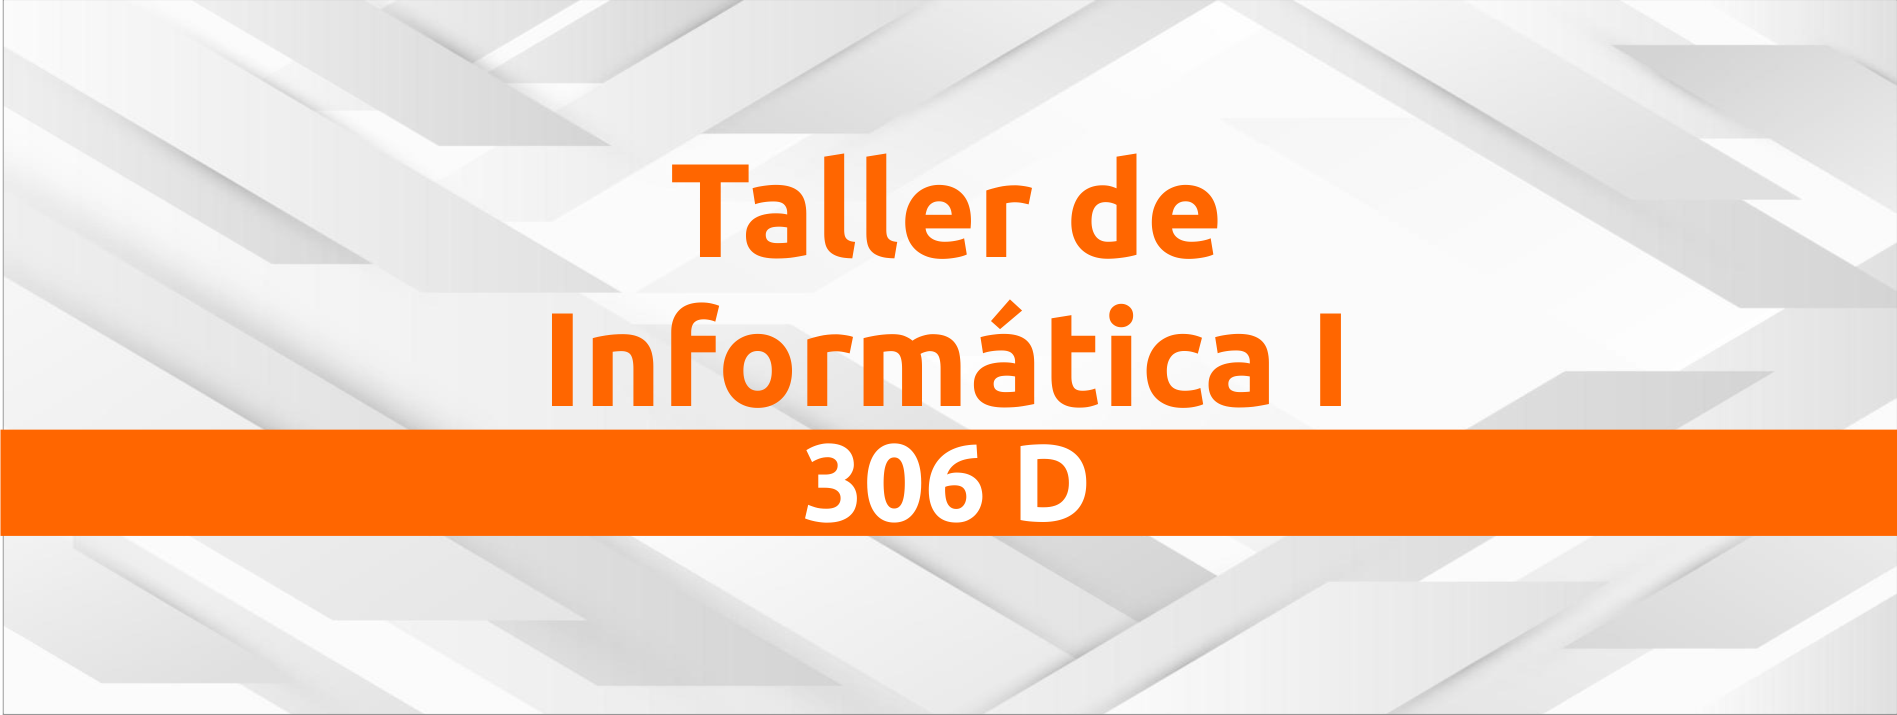 223ANCL63O Taller de Informática I